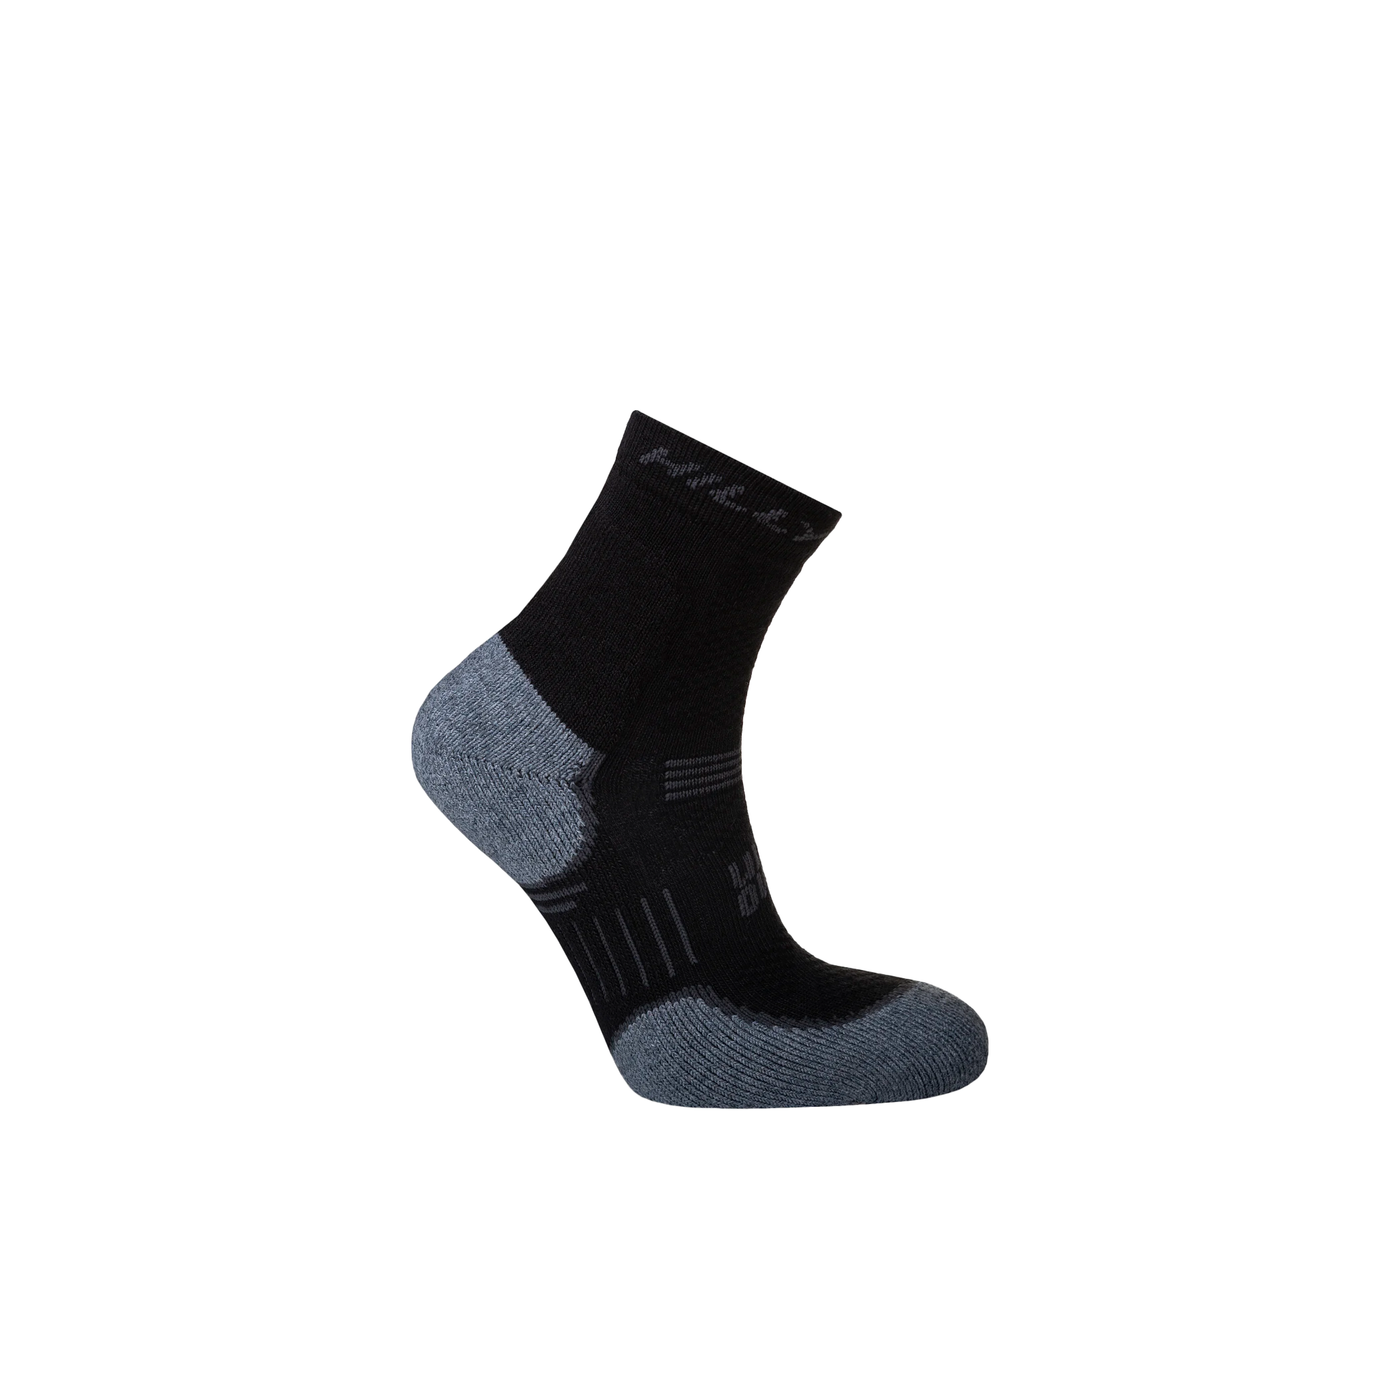 Hilly Supreme Anklet Max - Black/Grey Marl